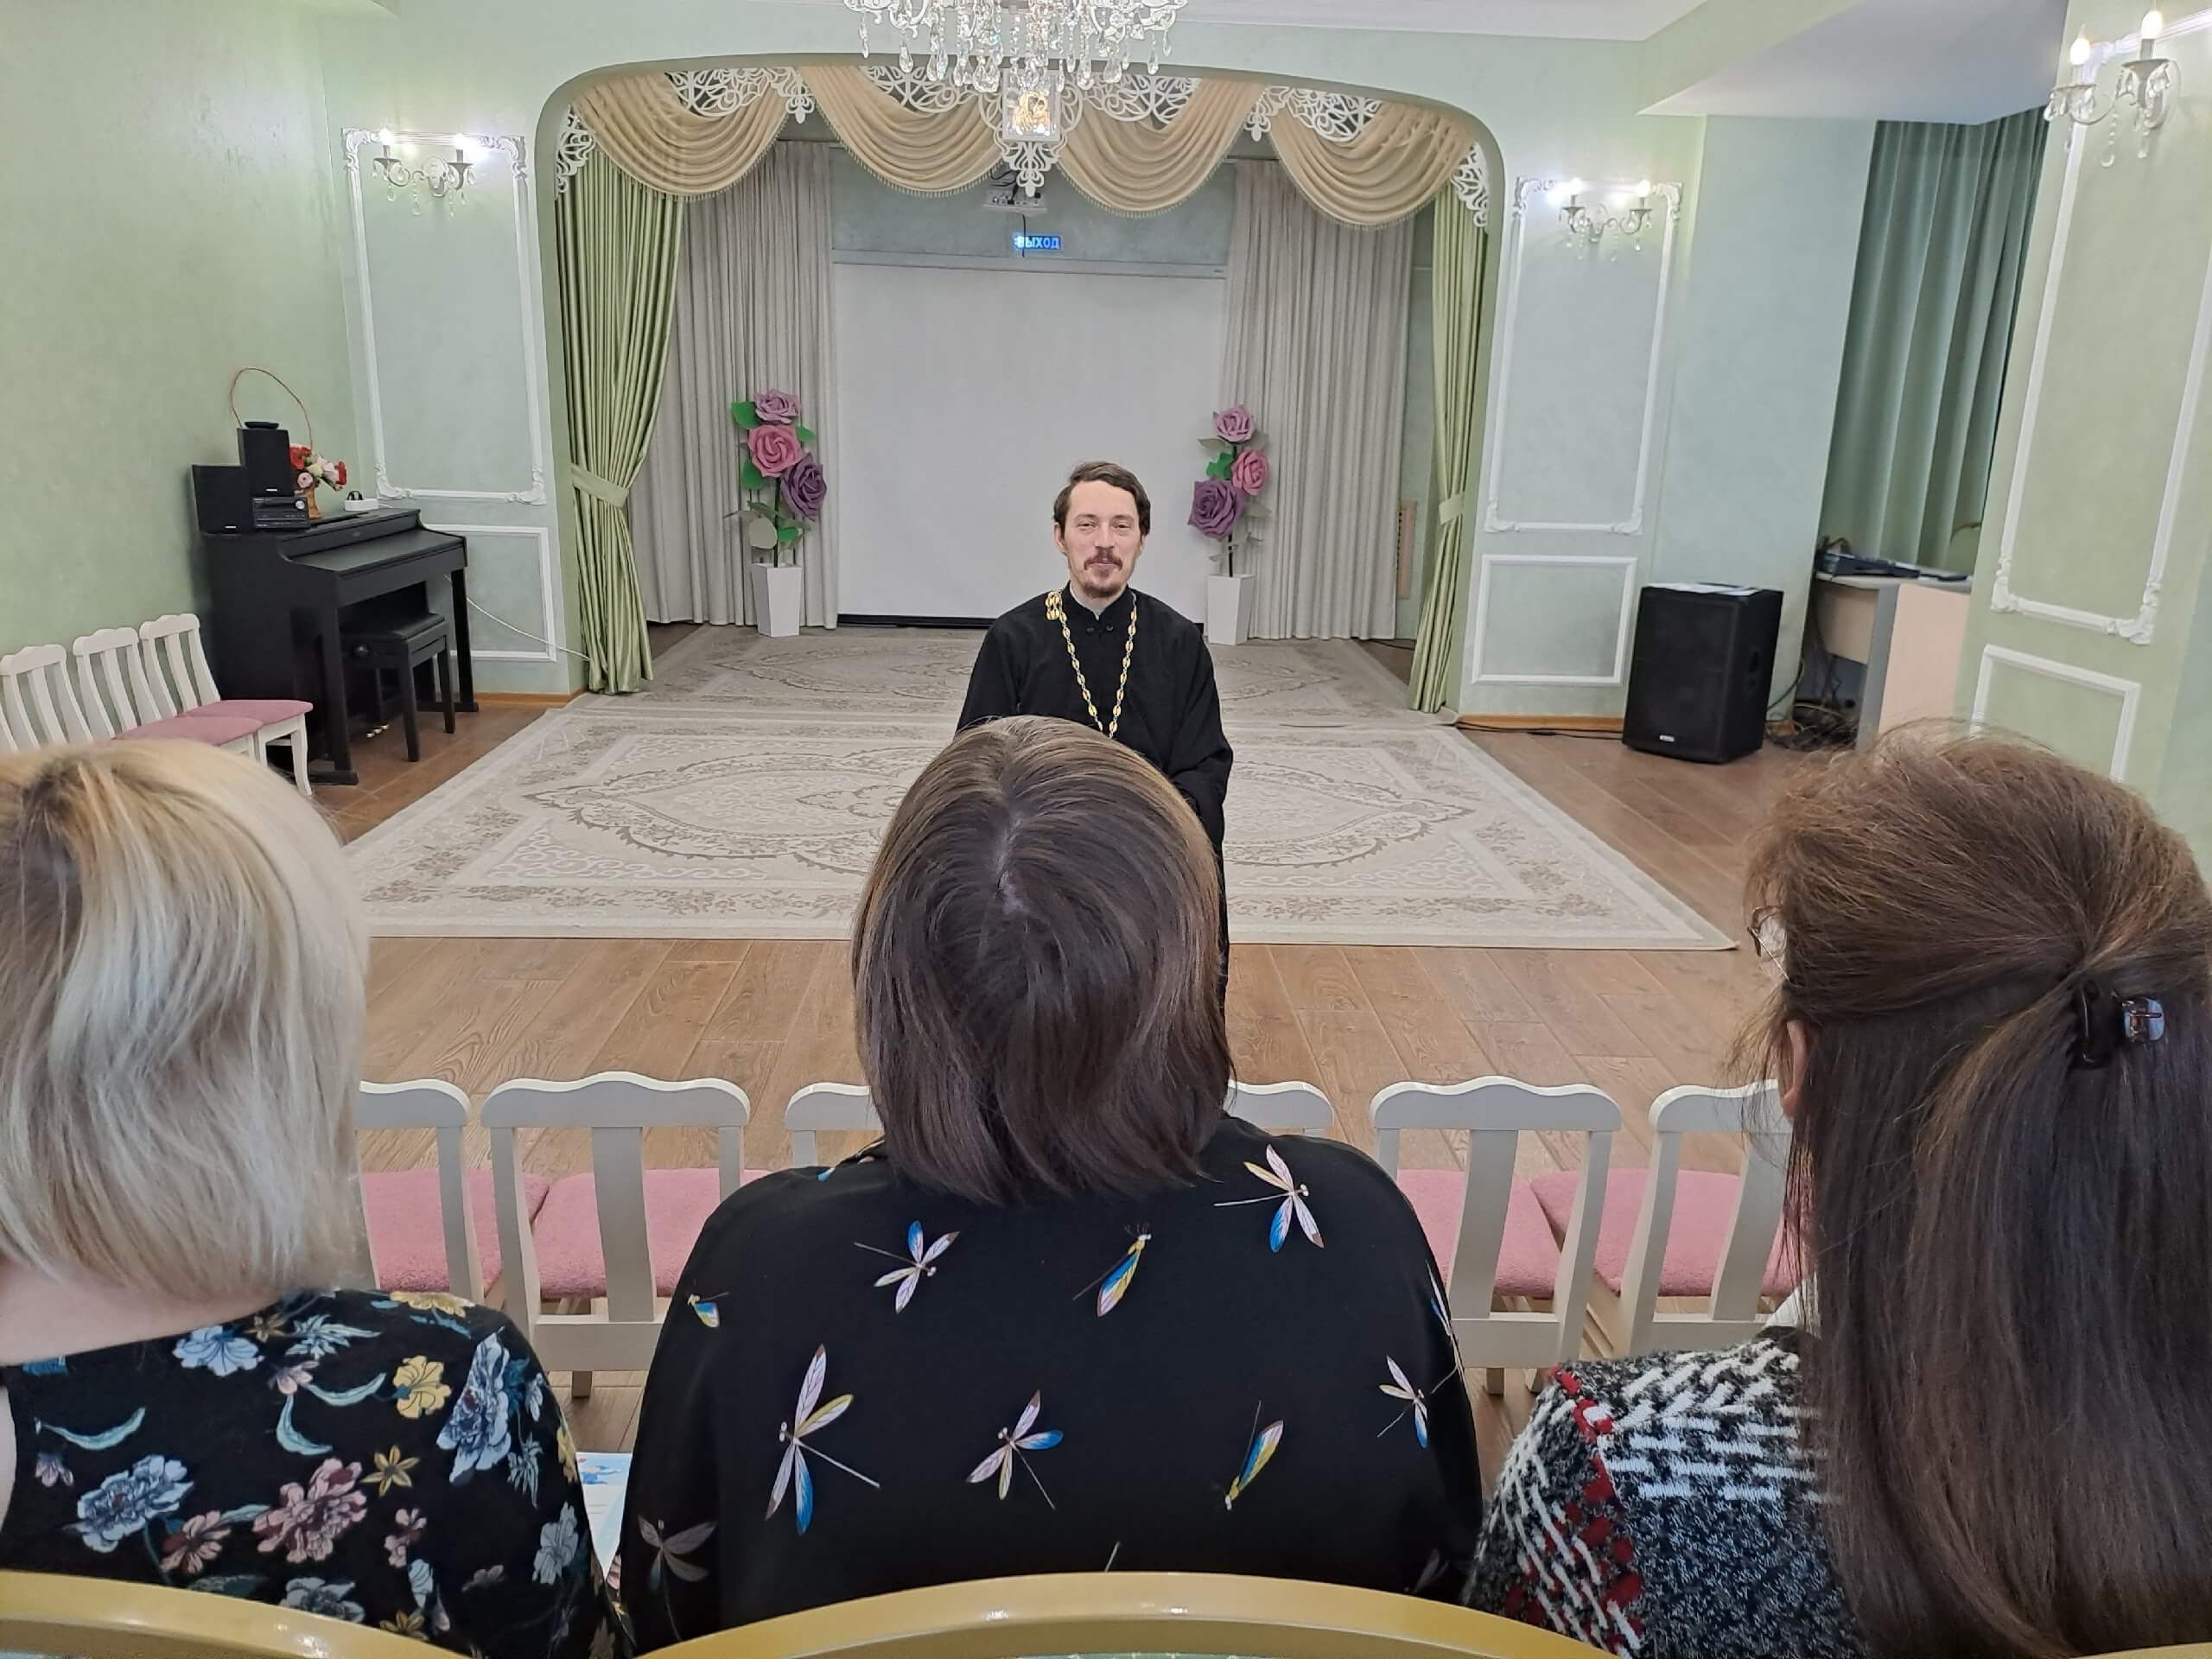 интерьер православной комнаты